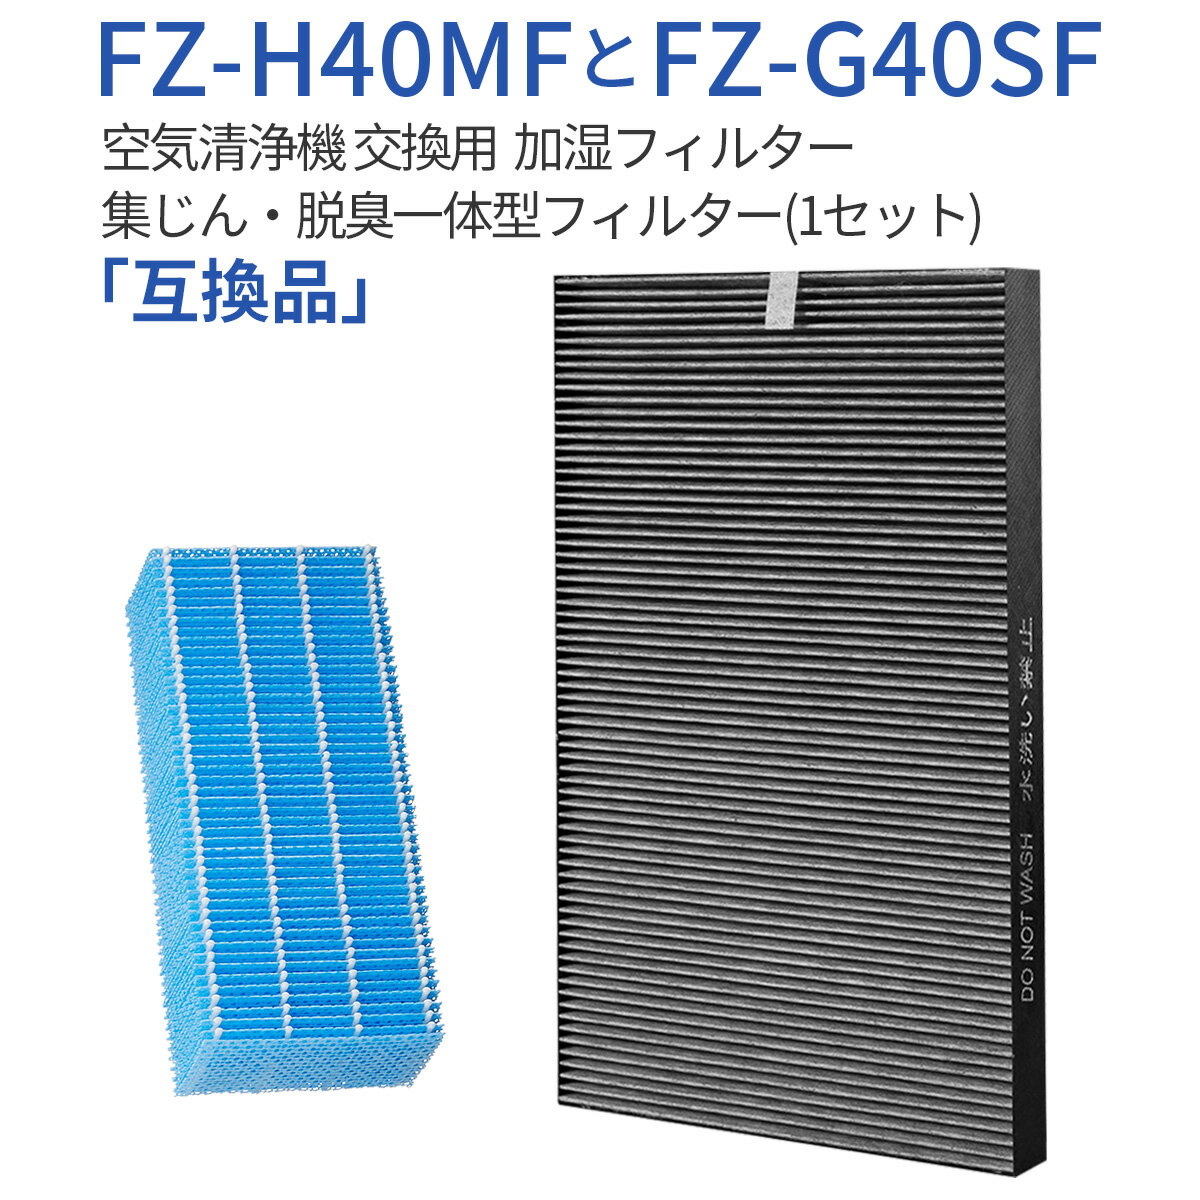 FZ-G40SF FZ-H40MF üե륿 fz-h40mf æη ե륿 fz-g40sf (FZ-D40SF...